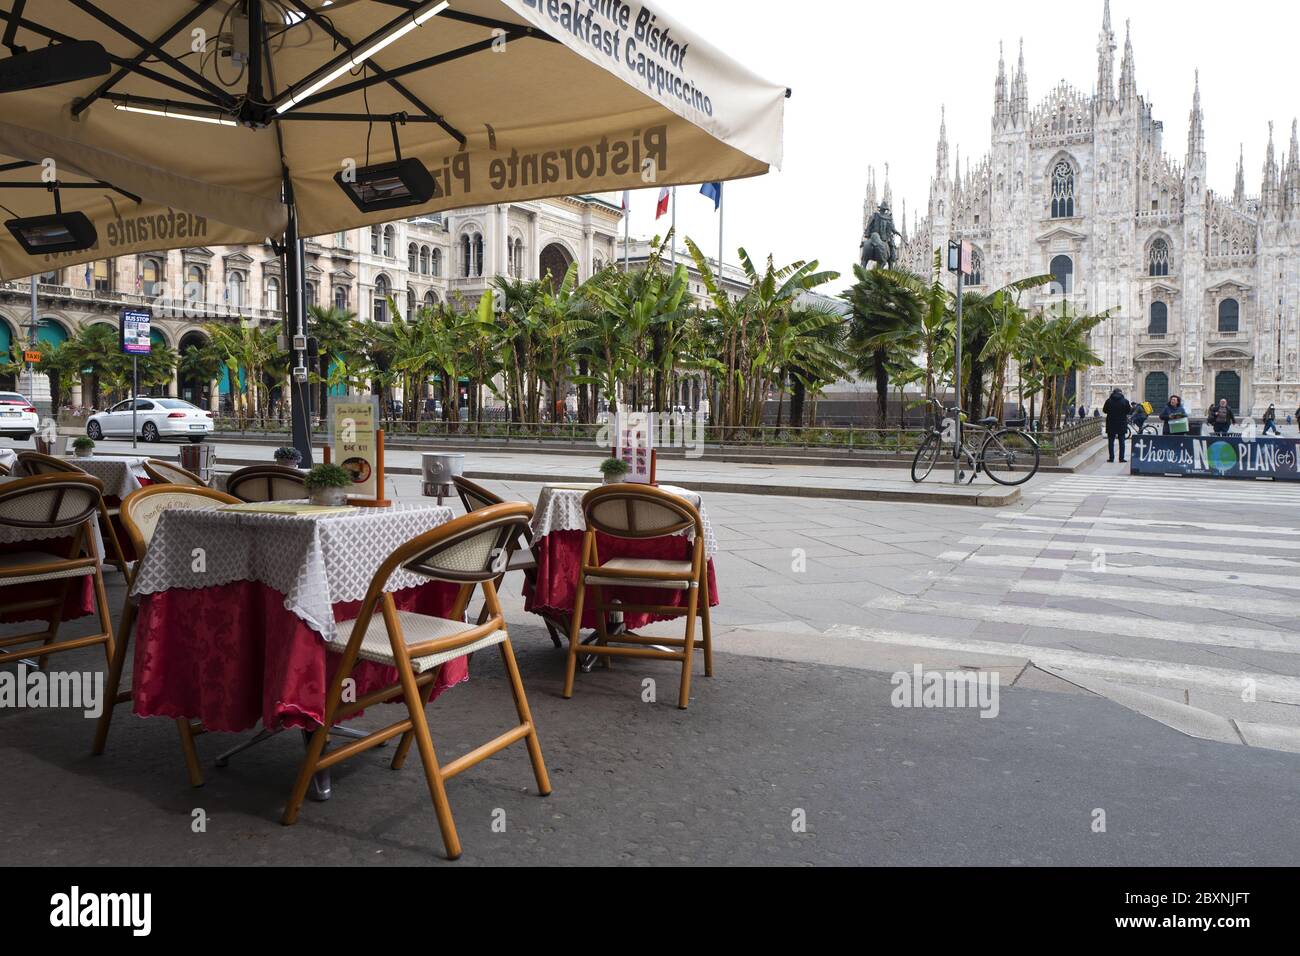 Le café restaurant vide de la place Duomo, pendant le confinement dû à l'urgence Covid-19, à Milan, italie. Banque D'Images